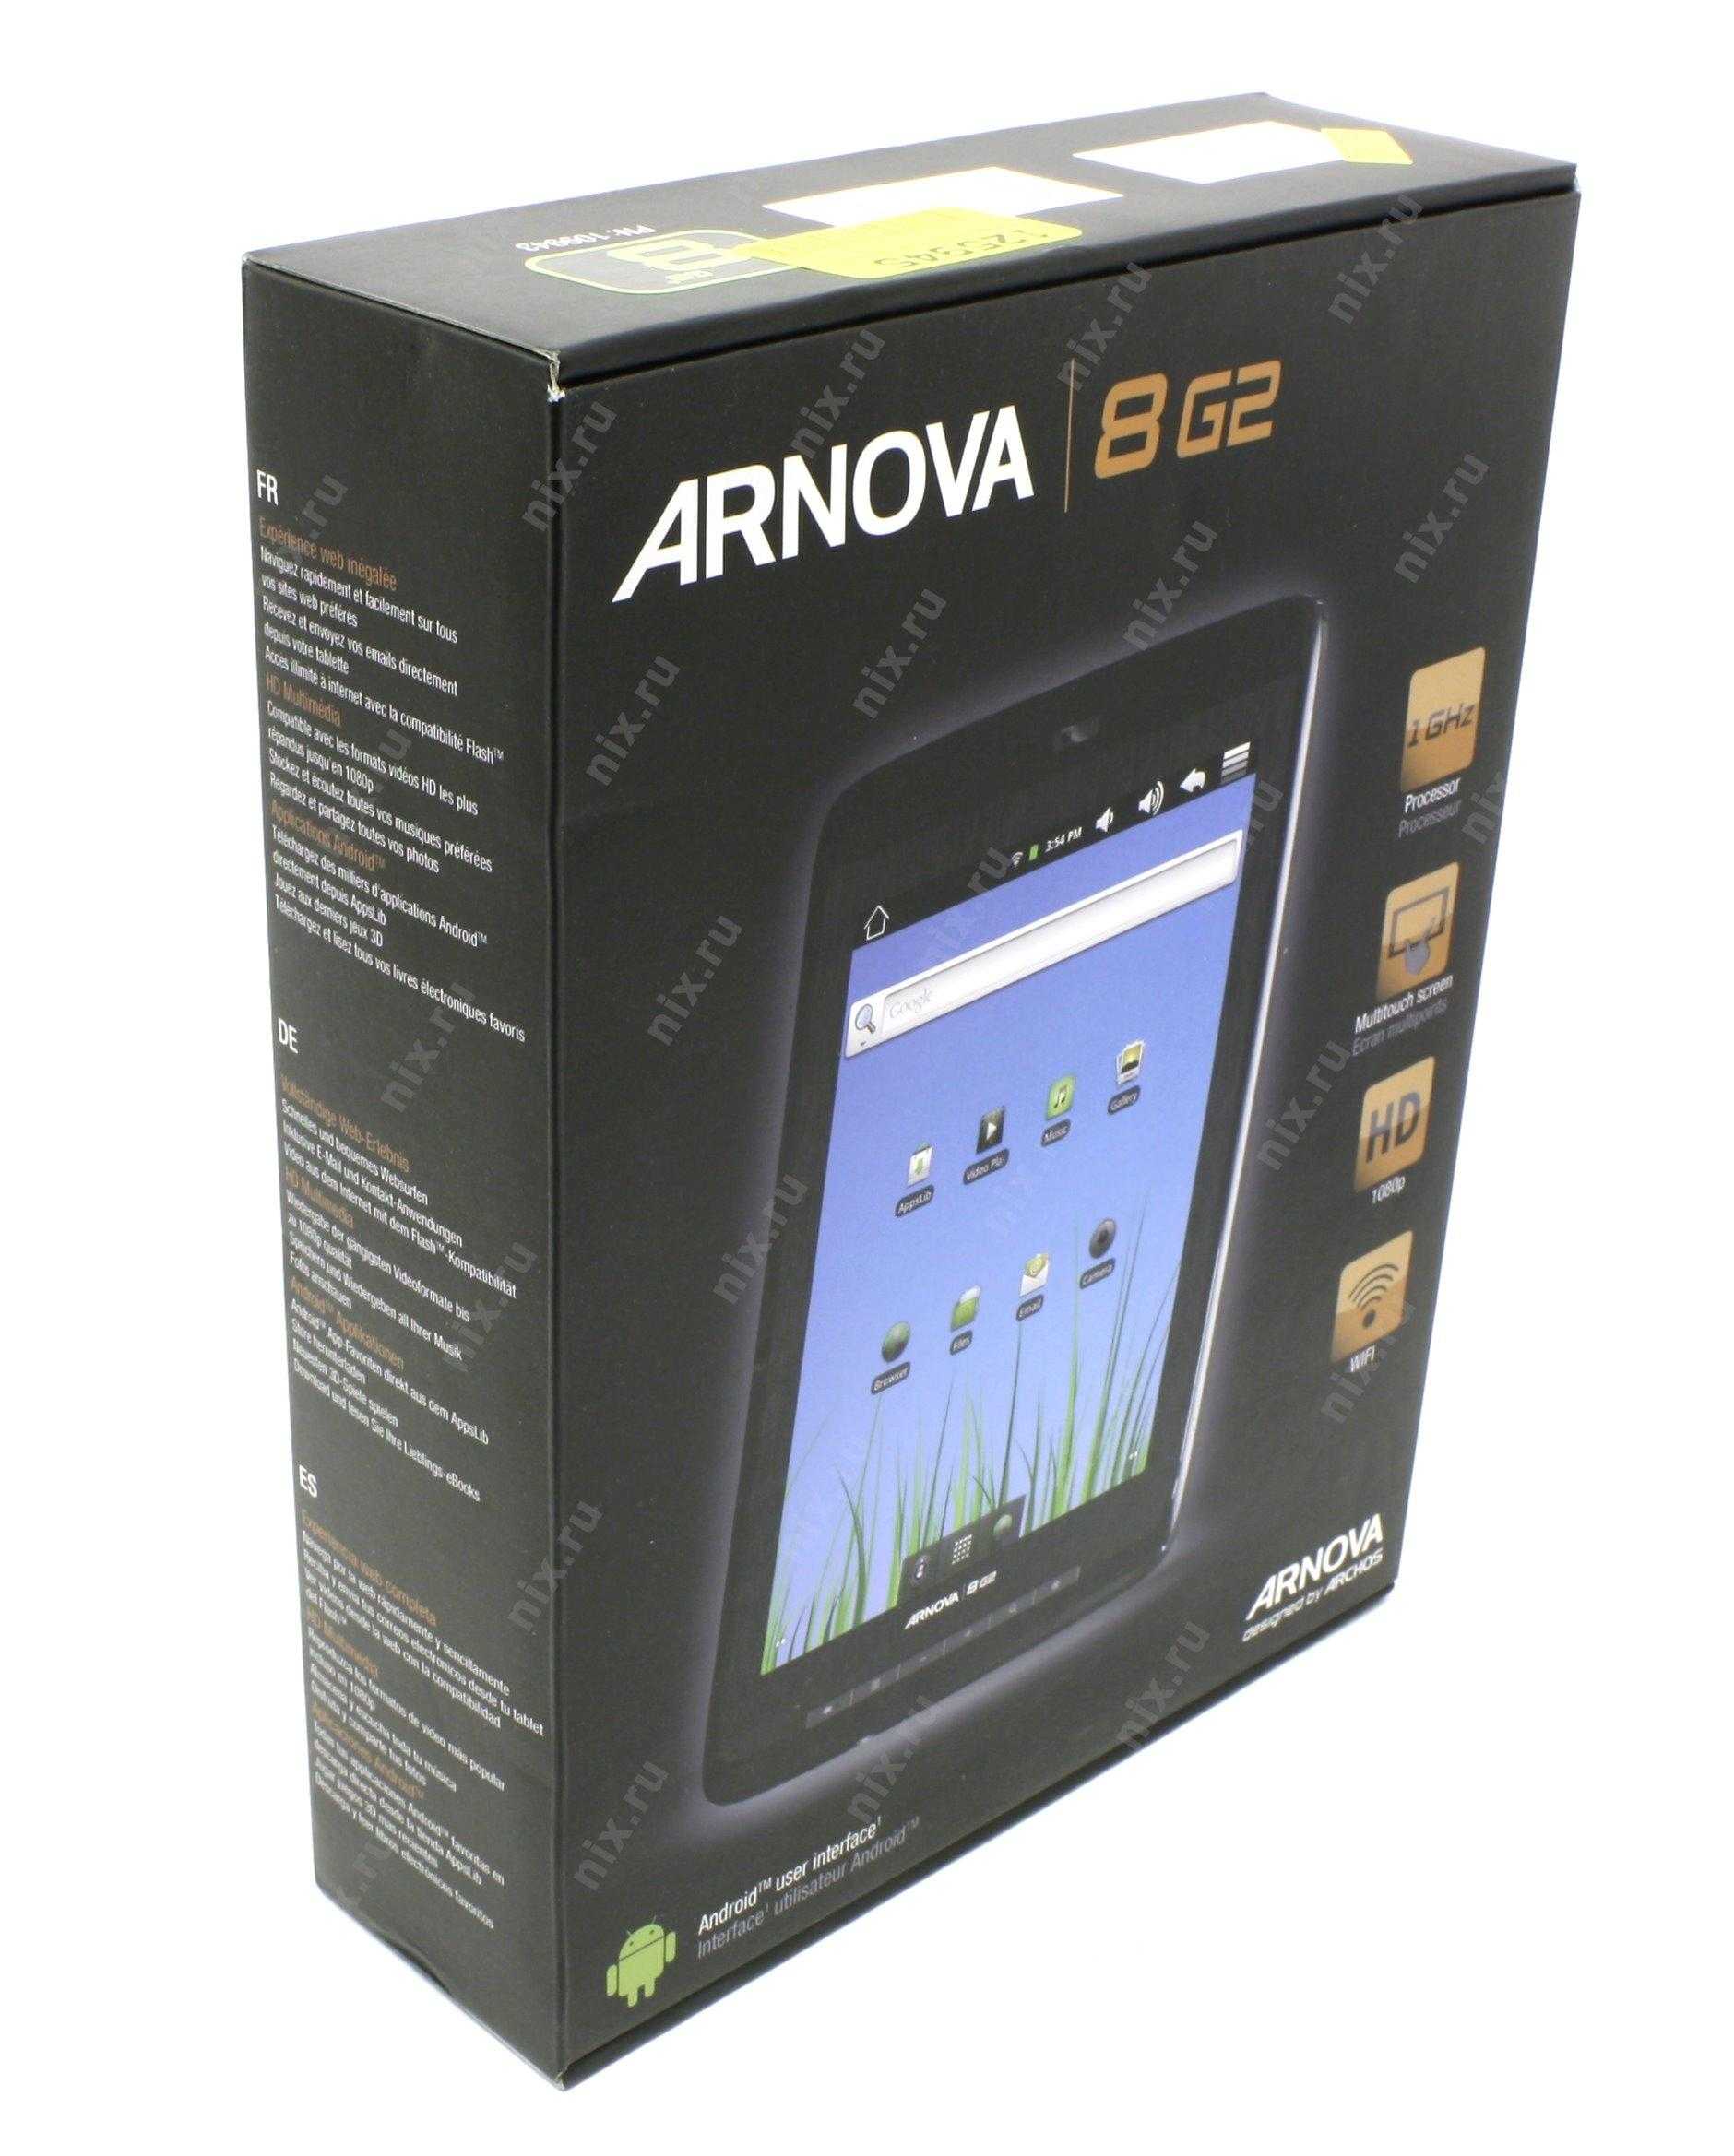 Archos arnova 9 g2 8gb (черный) - купить , скидки, цена, отзывы, обзор, характеристики - планшеты